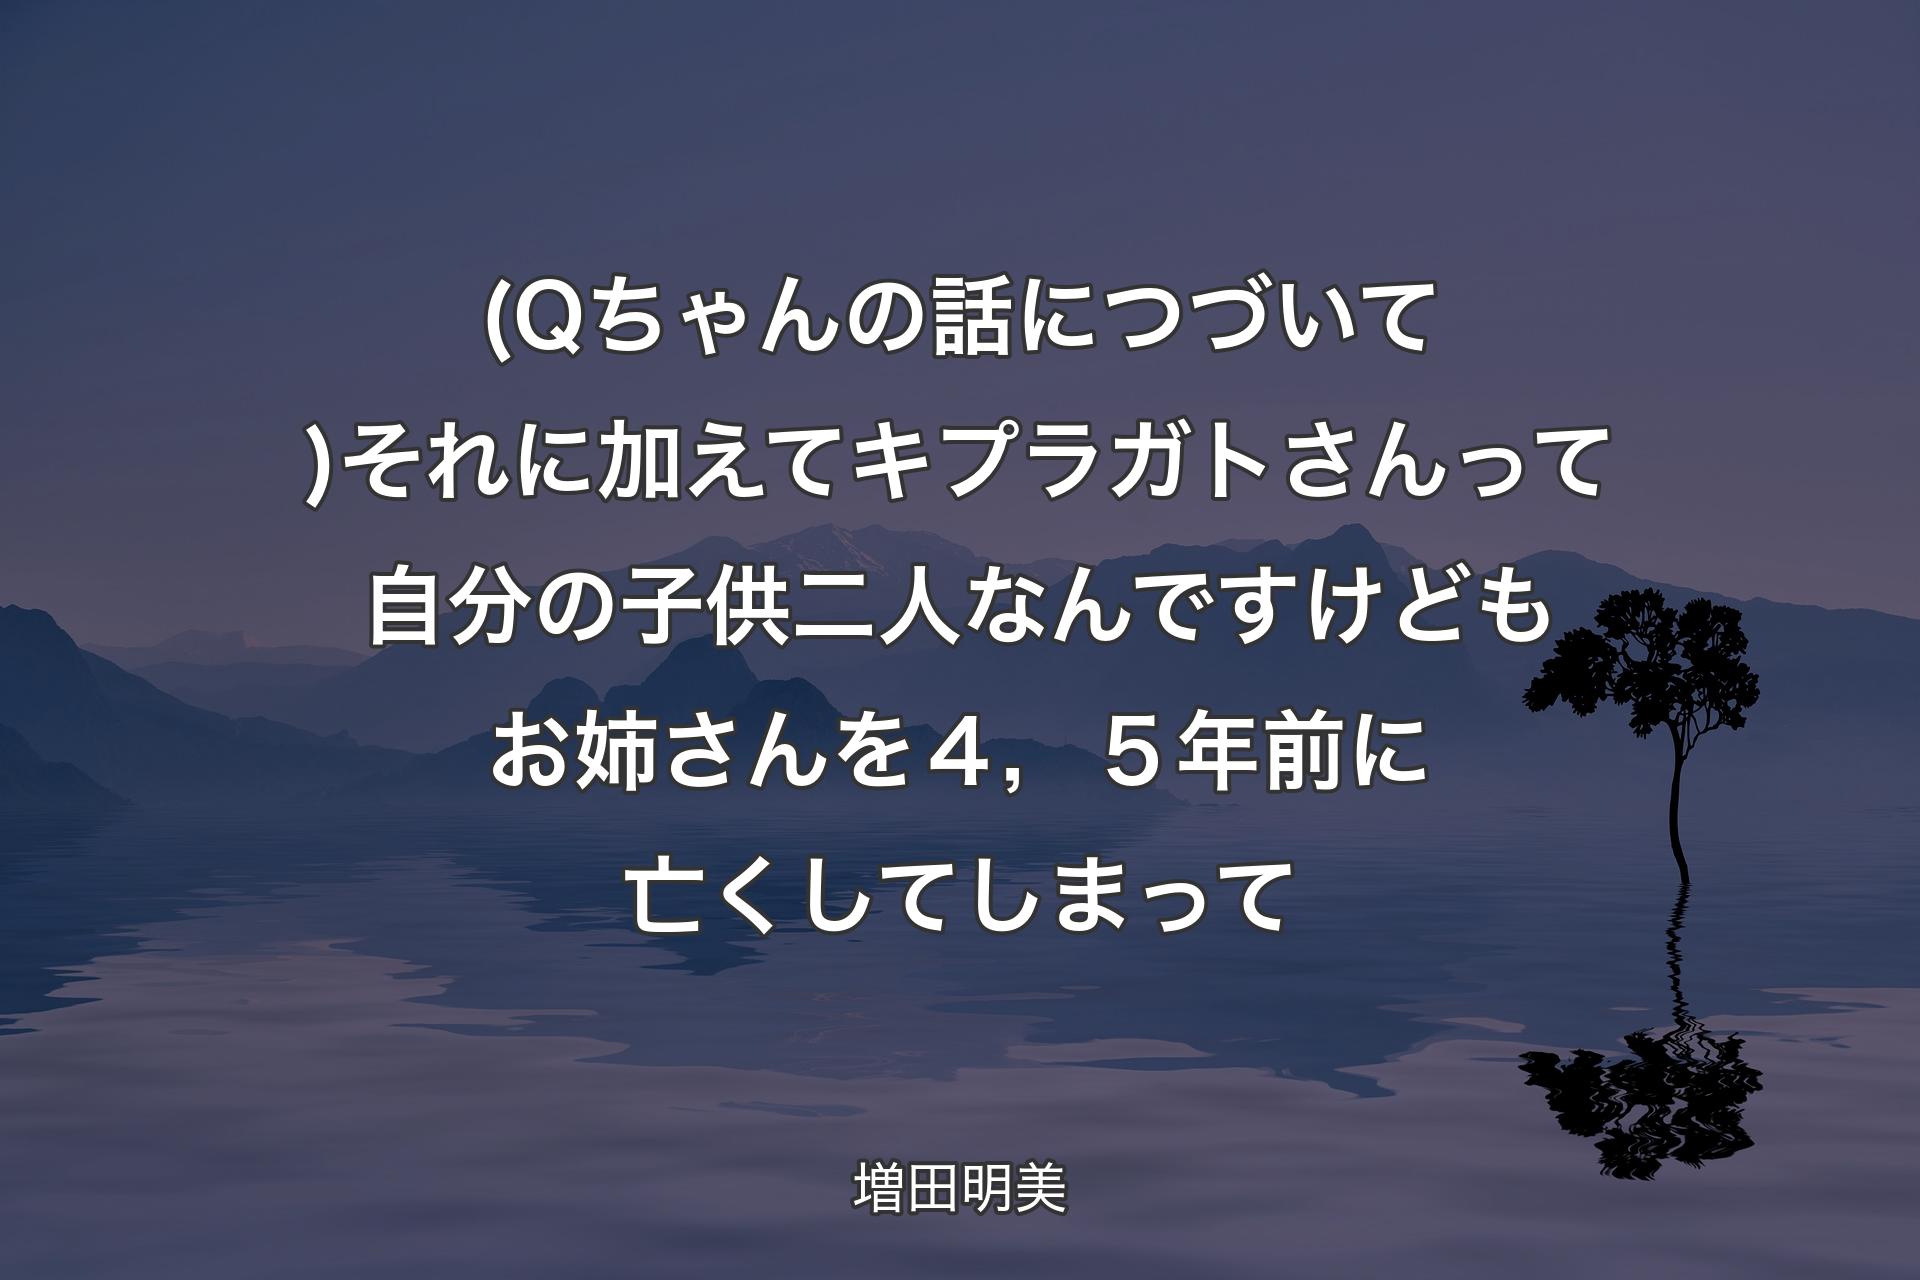 【背景4】(Qちゃんの話につづいて)それに加えてキプラガトさんって自分の子供二人なんですけども お姉さんを４，５年前に亡くしてしまって - 増田明美